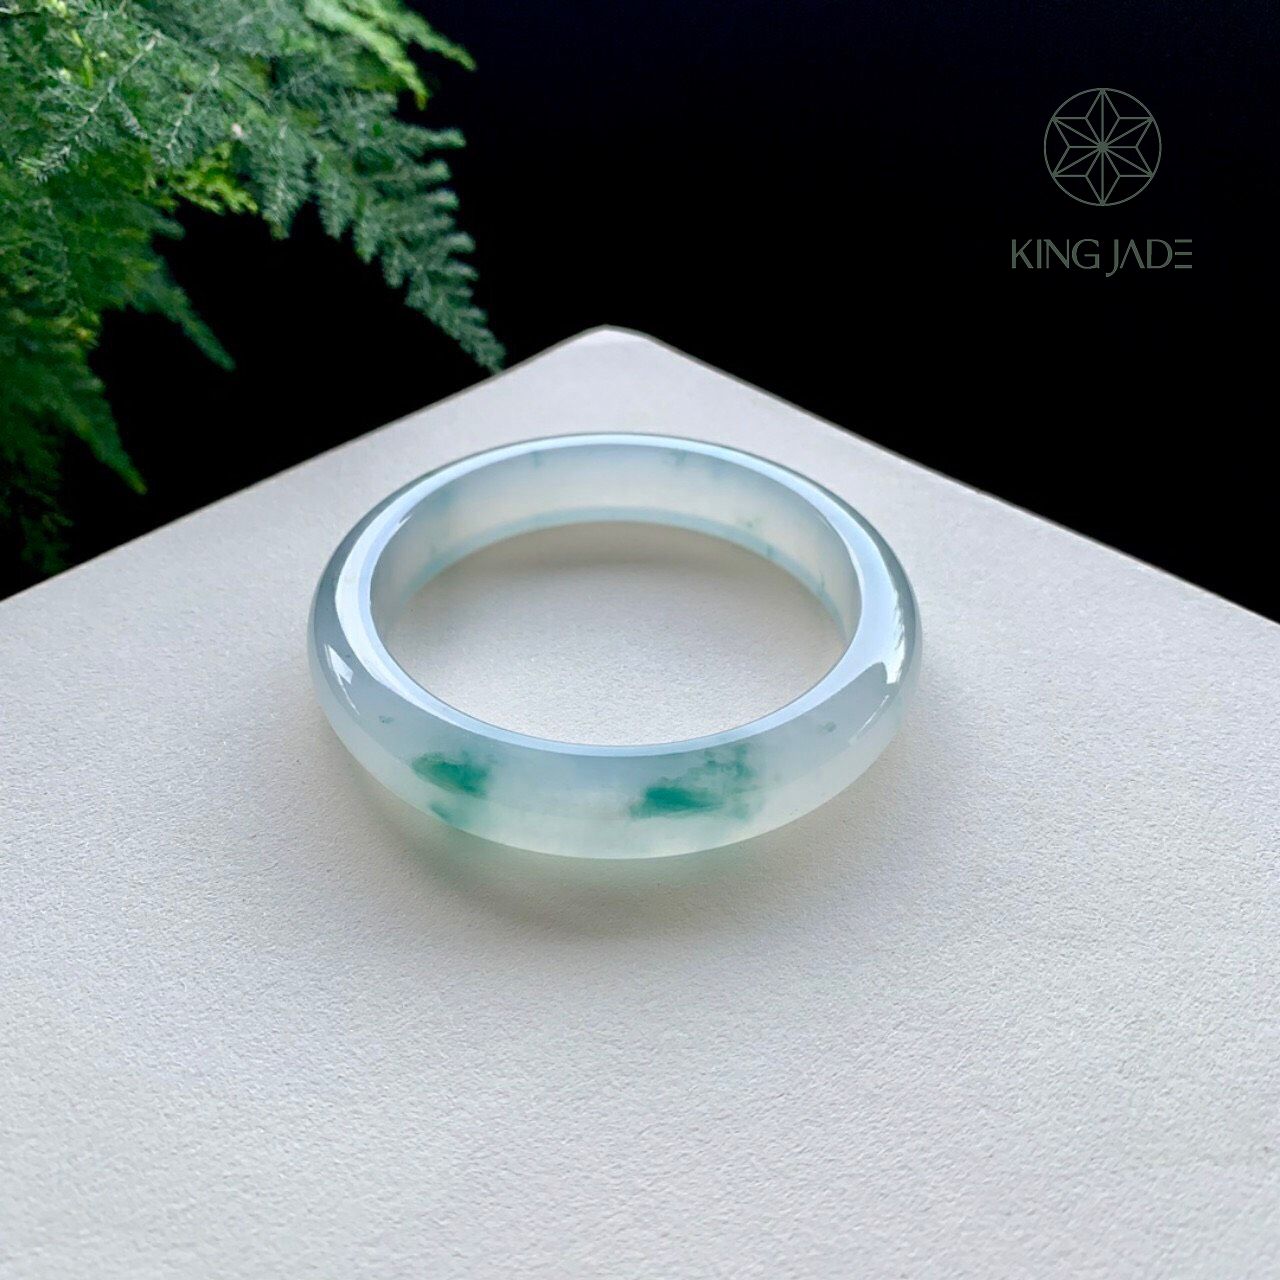 Vòng Ngọc Phỉ Thúy King Jade 034 - Đơn Thuần và Thanh Khiết